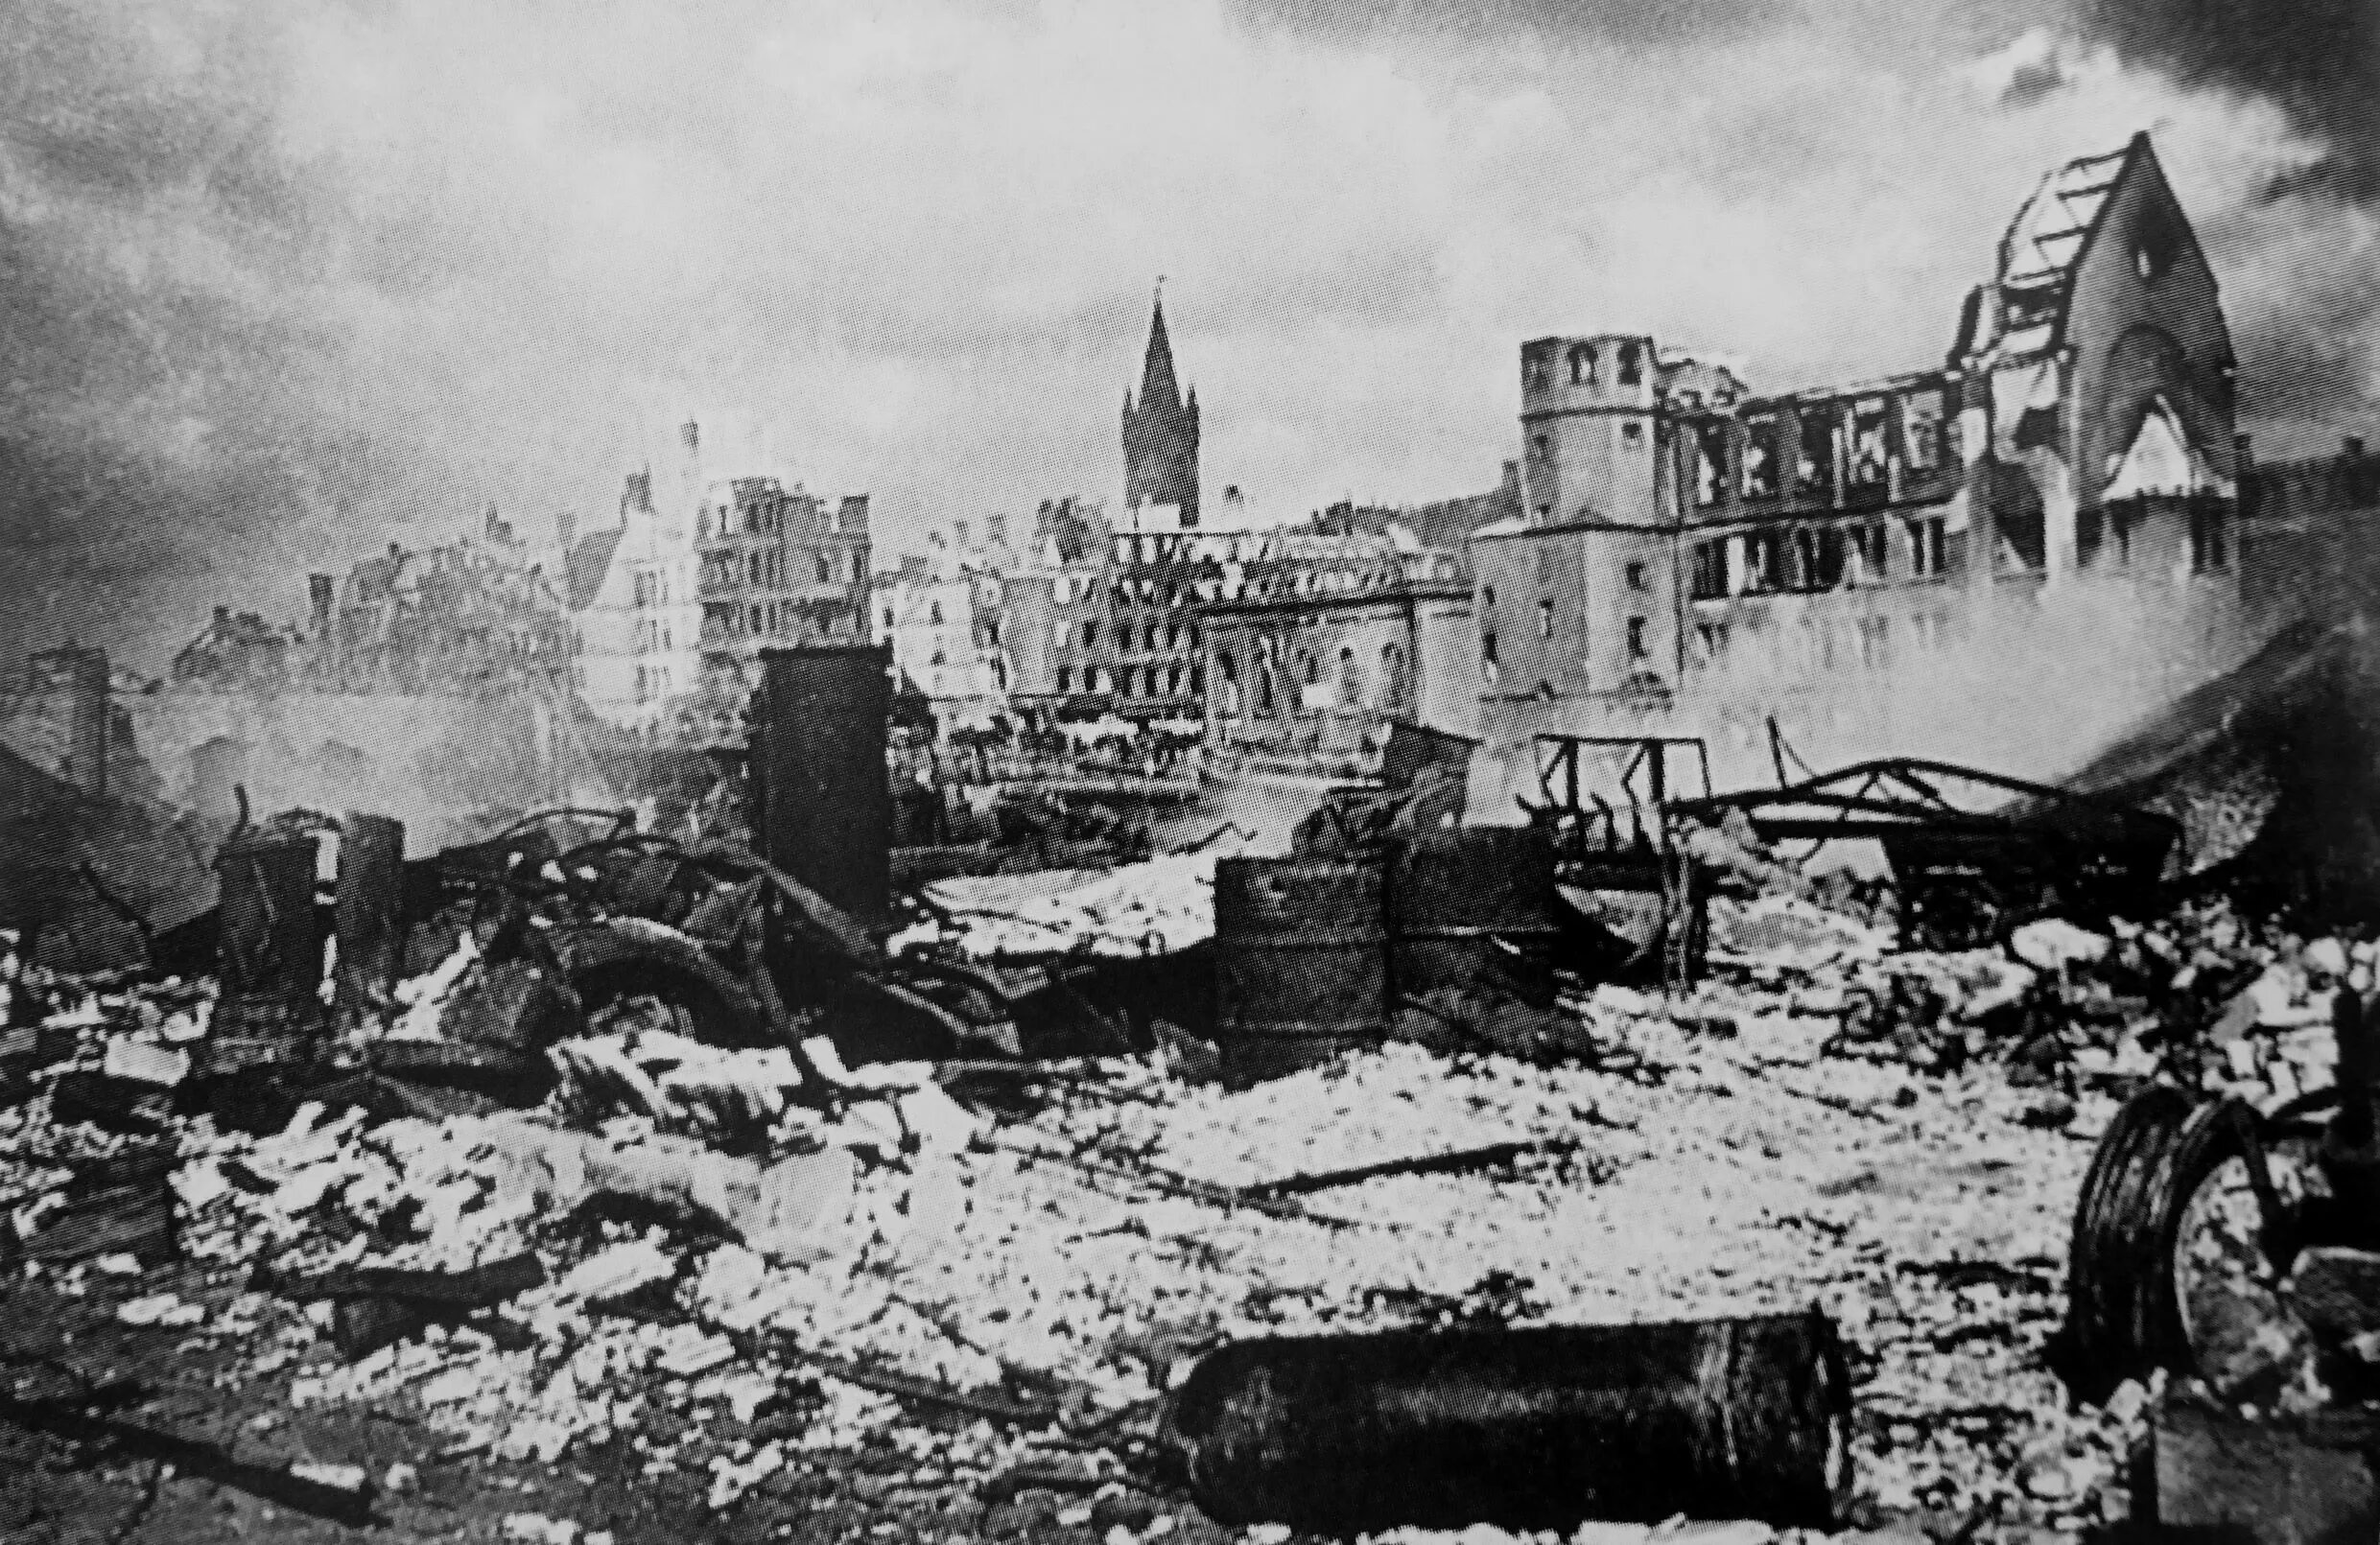 Германия будет разрушена. Штурм Кёнигсберга в 1945 году. Кенигсберг операция 1945. Крепость Кенигсберг 1945. Взятие крепости Кенигсберг 9 апреля 1945.